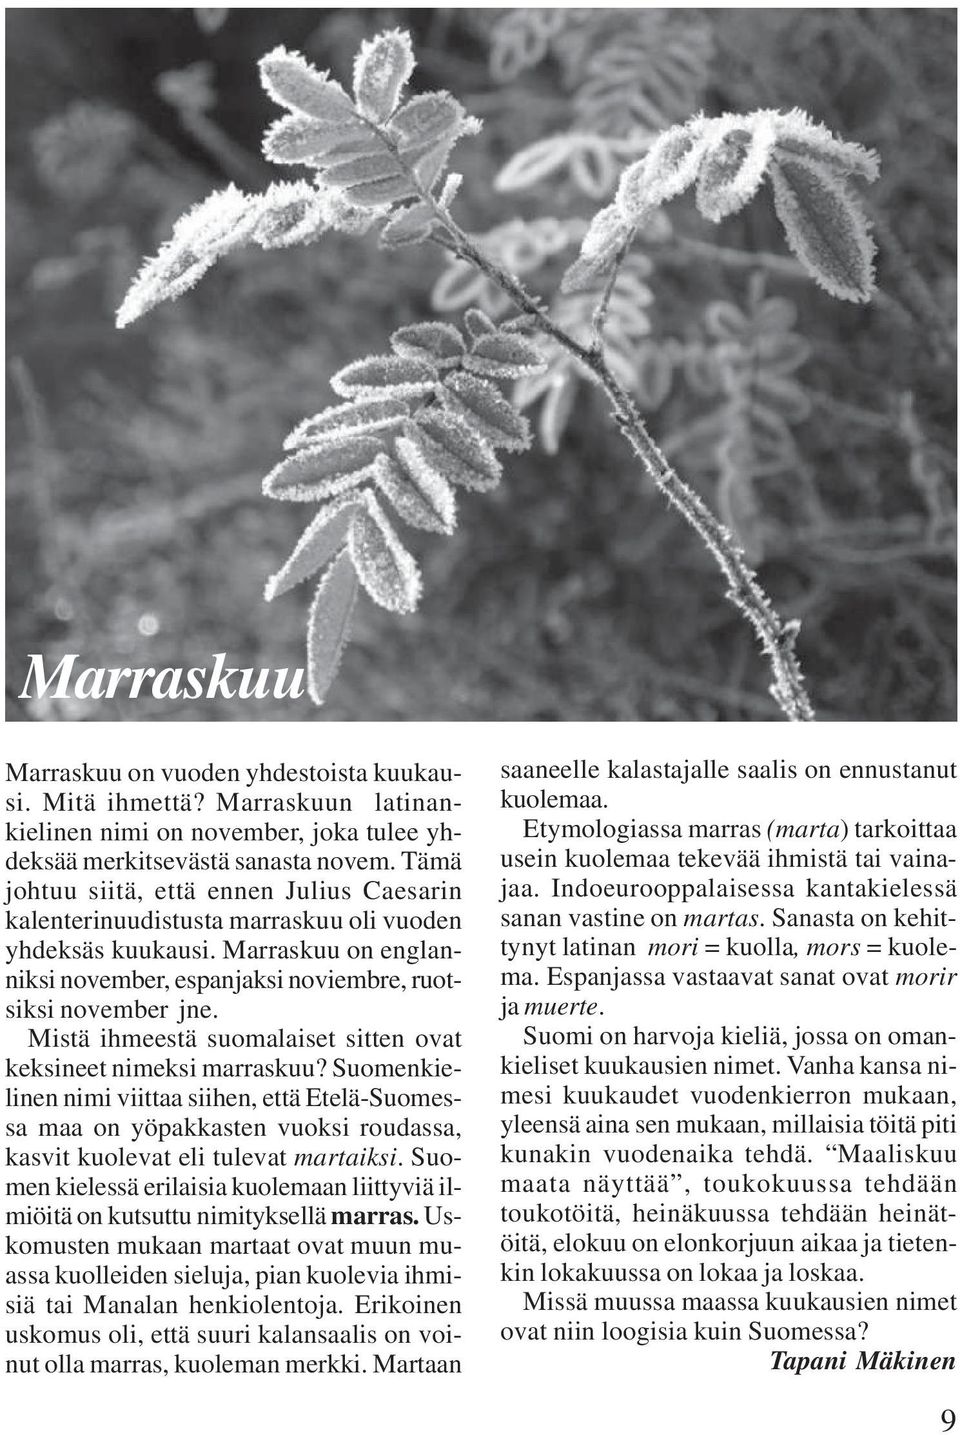 Mistä ihmeestä suomalaiset sitten ovat keksineet nimeksi marraskuu? Suomenkielinen nimi viittaa siihen, että Etelä-Suomessa maa on yöpakkasten vuoksi roudassa, kasvit kuolevat eli tulevat martaiksi.